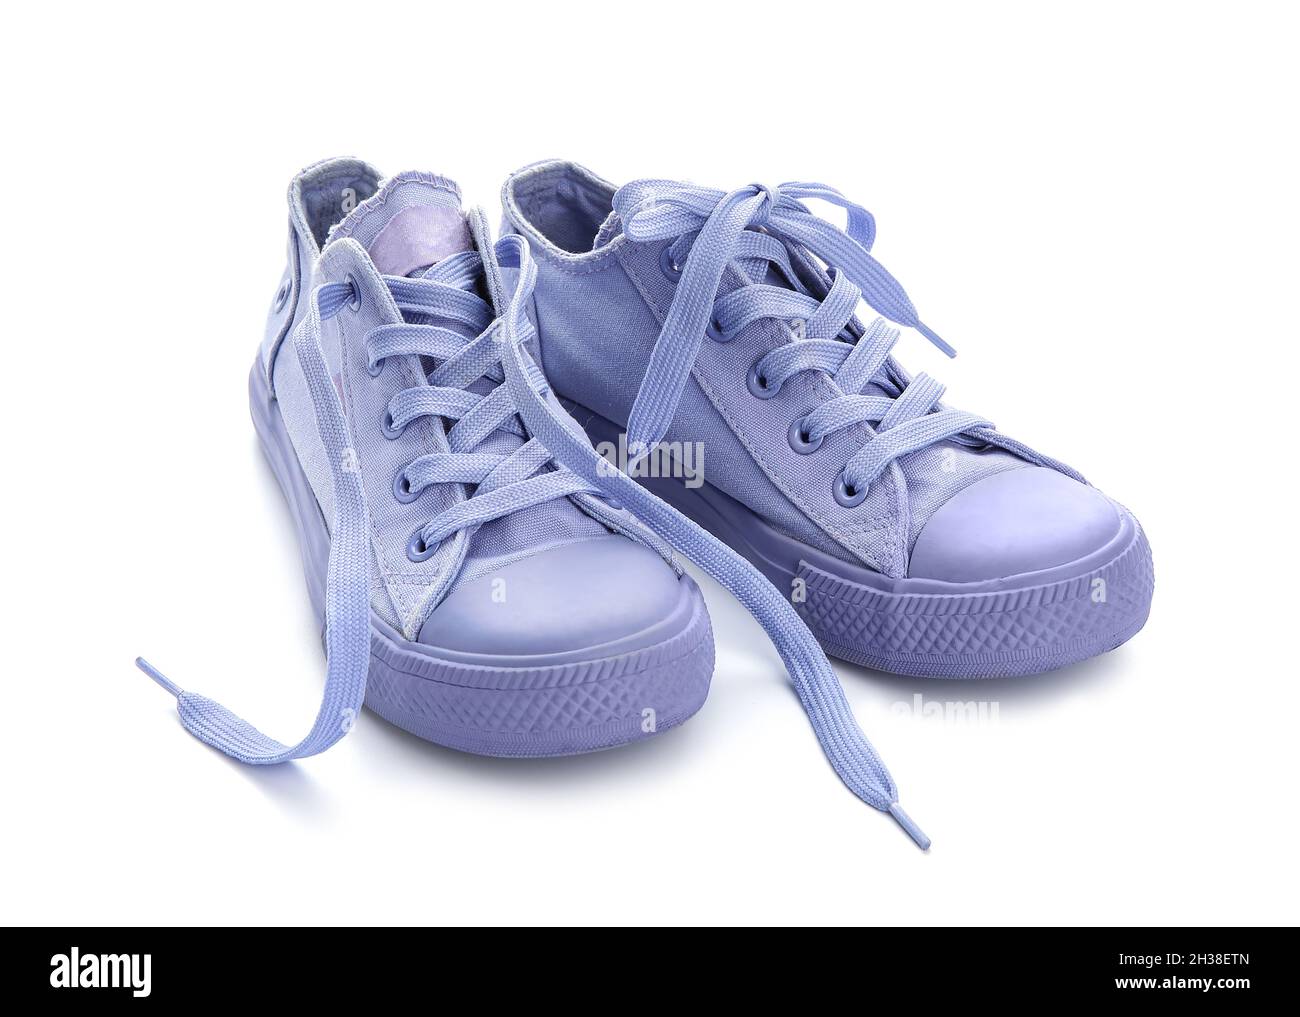 Stilvolle Flieder-Schuhe mit Schnürsenkeln auf weißem Hintergrund  Stockfotografie - Alamy